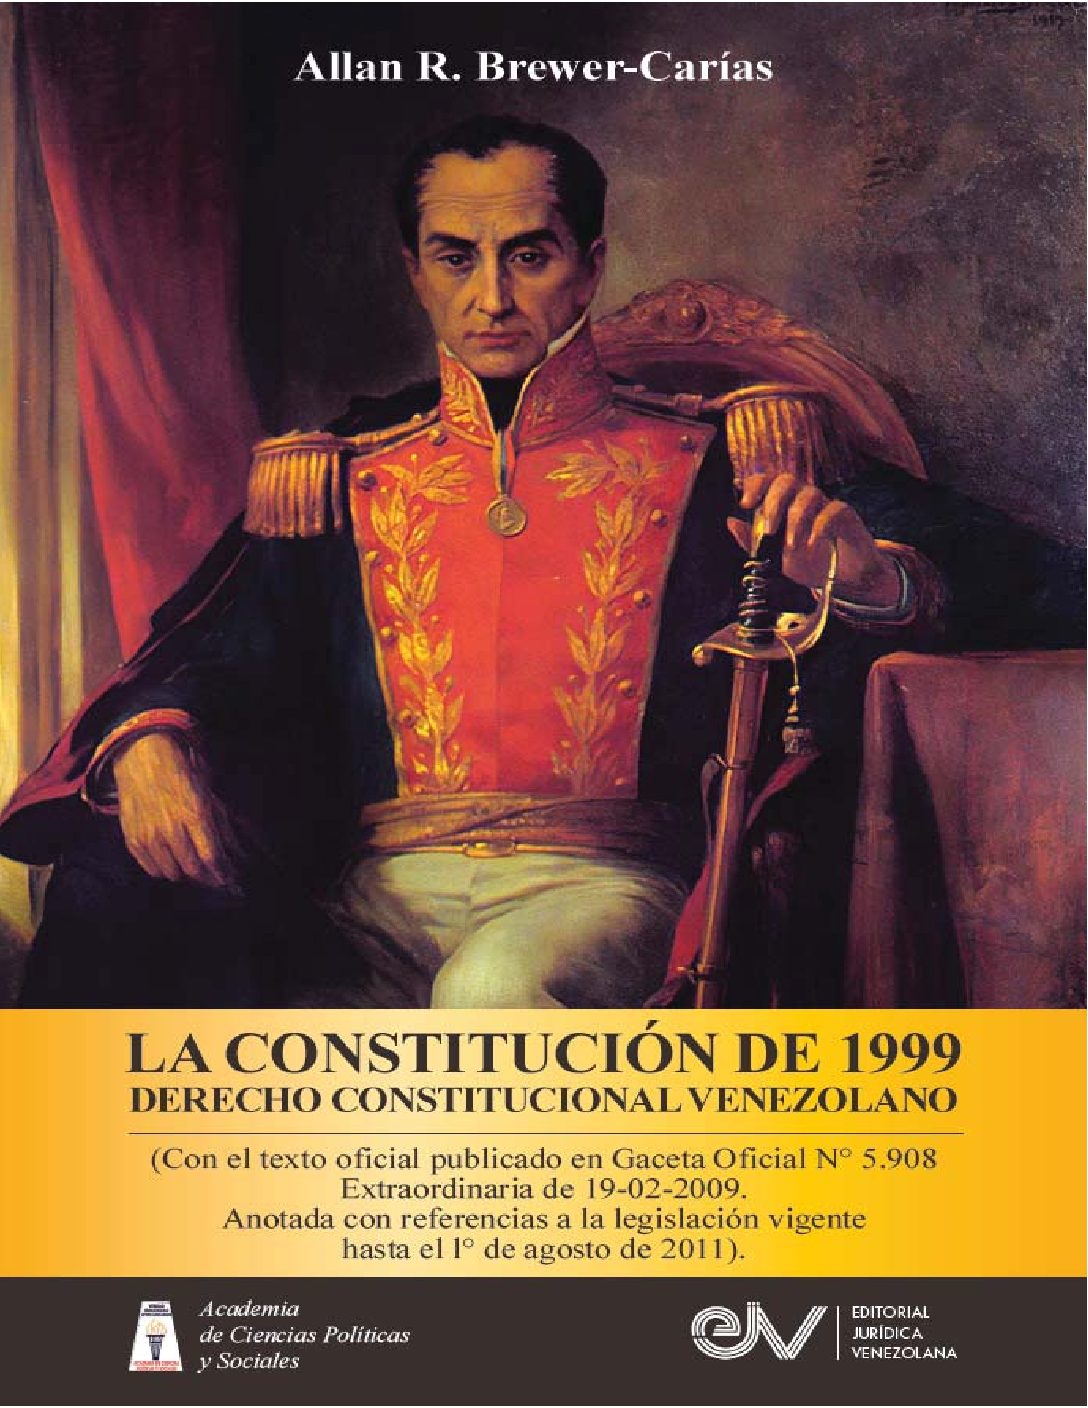 Disponible a texto completo el libro: La Constitución de 1999. Derecho constitucional venezolano. Autor: Allan R. Brewer-Carías